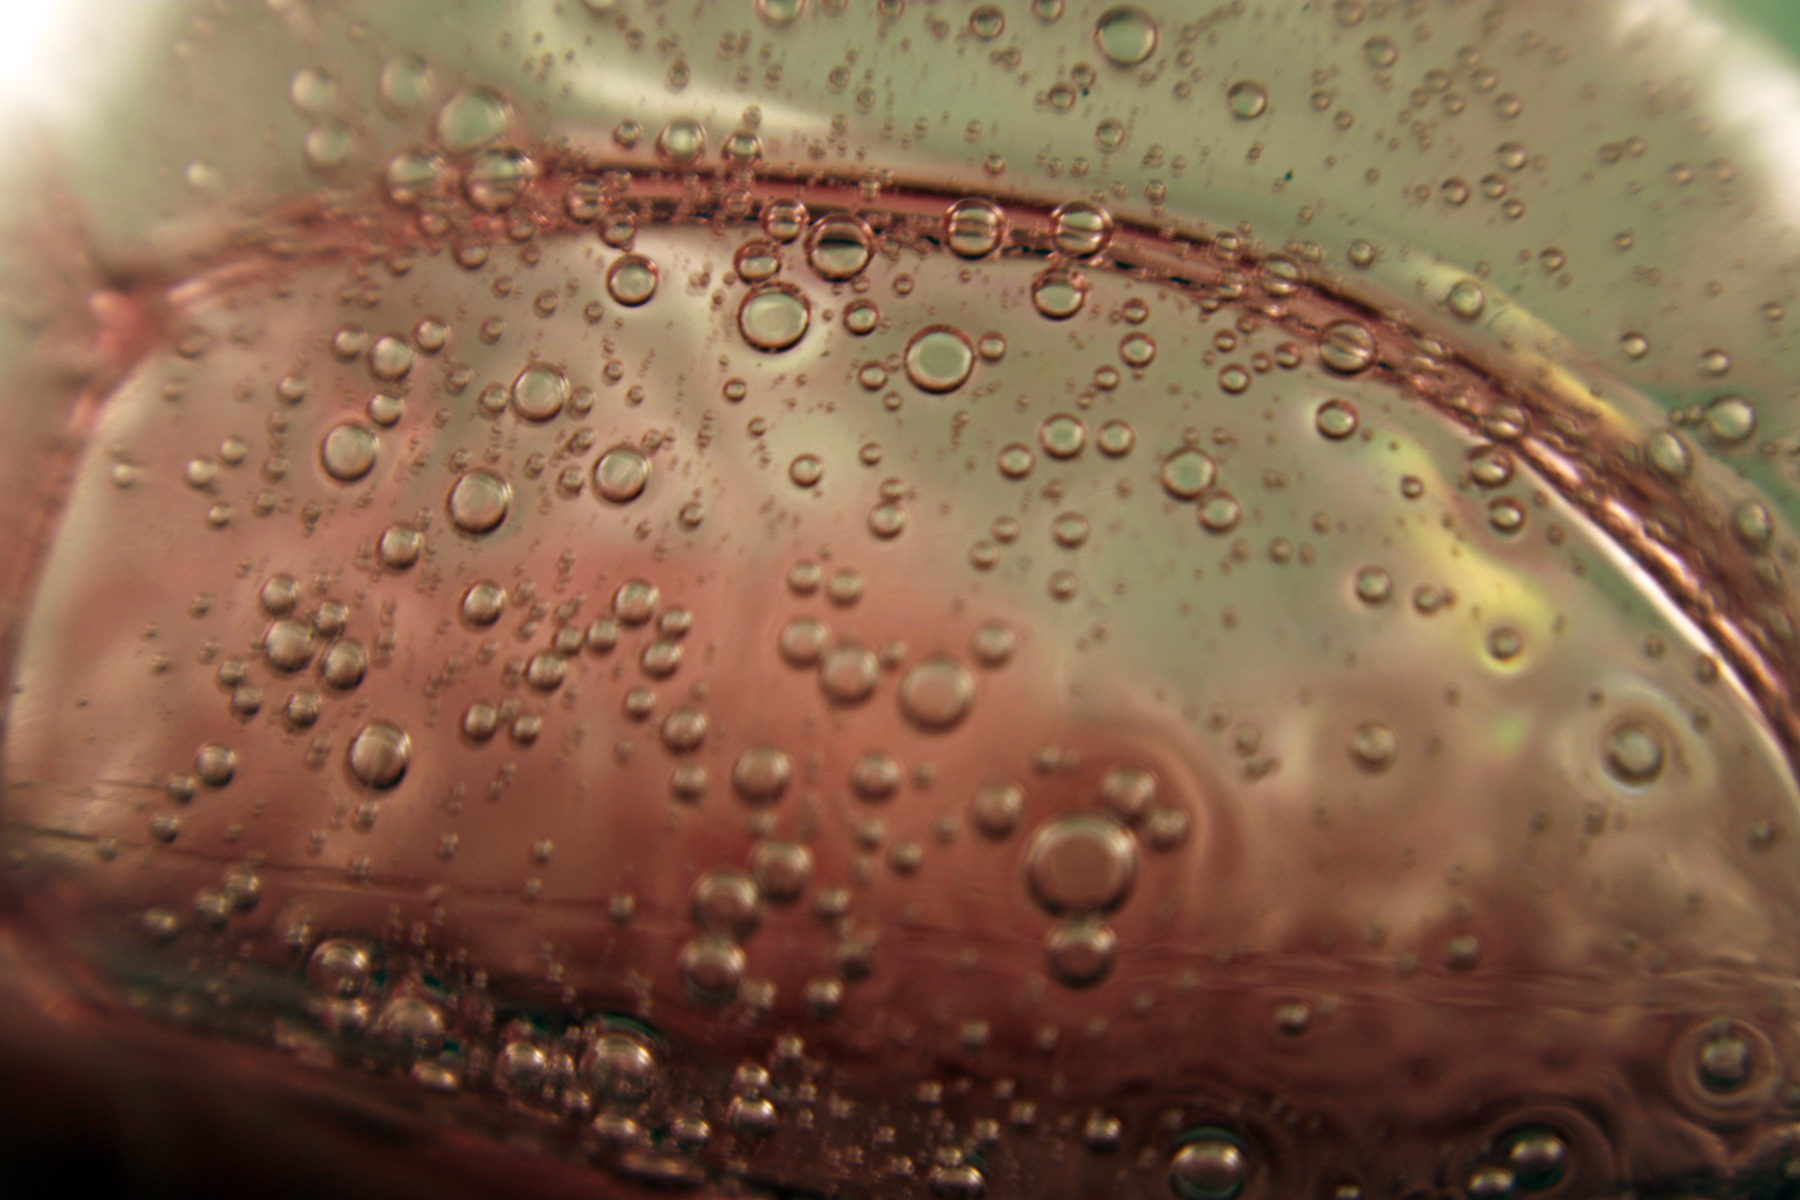 Liquids and bubbles